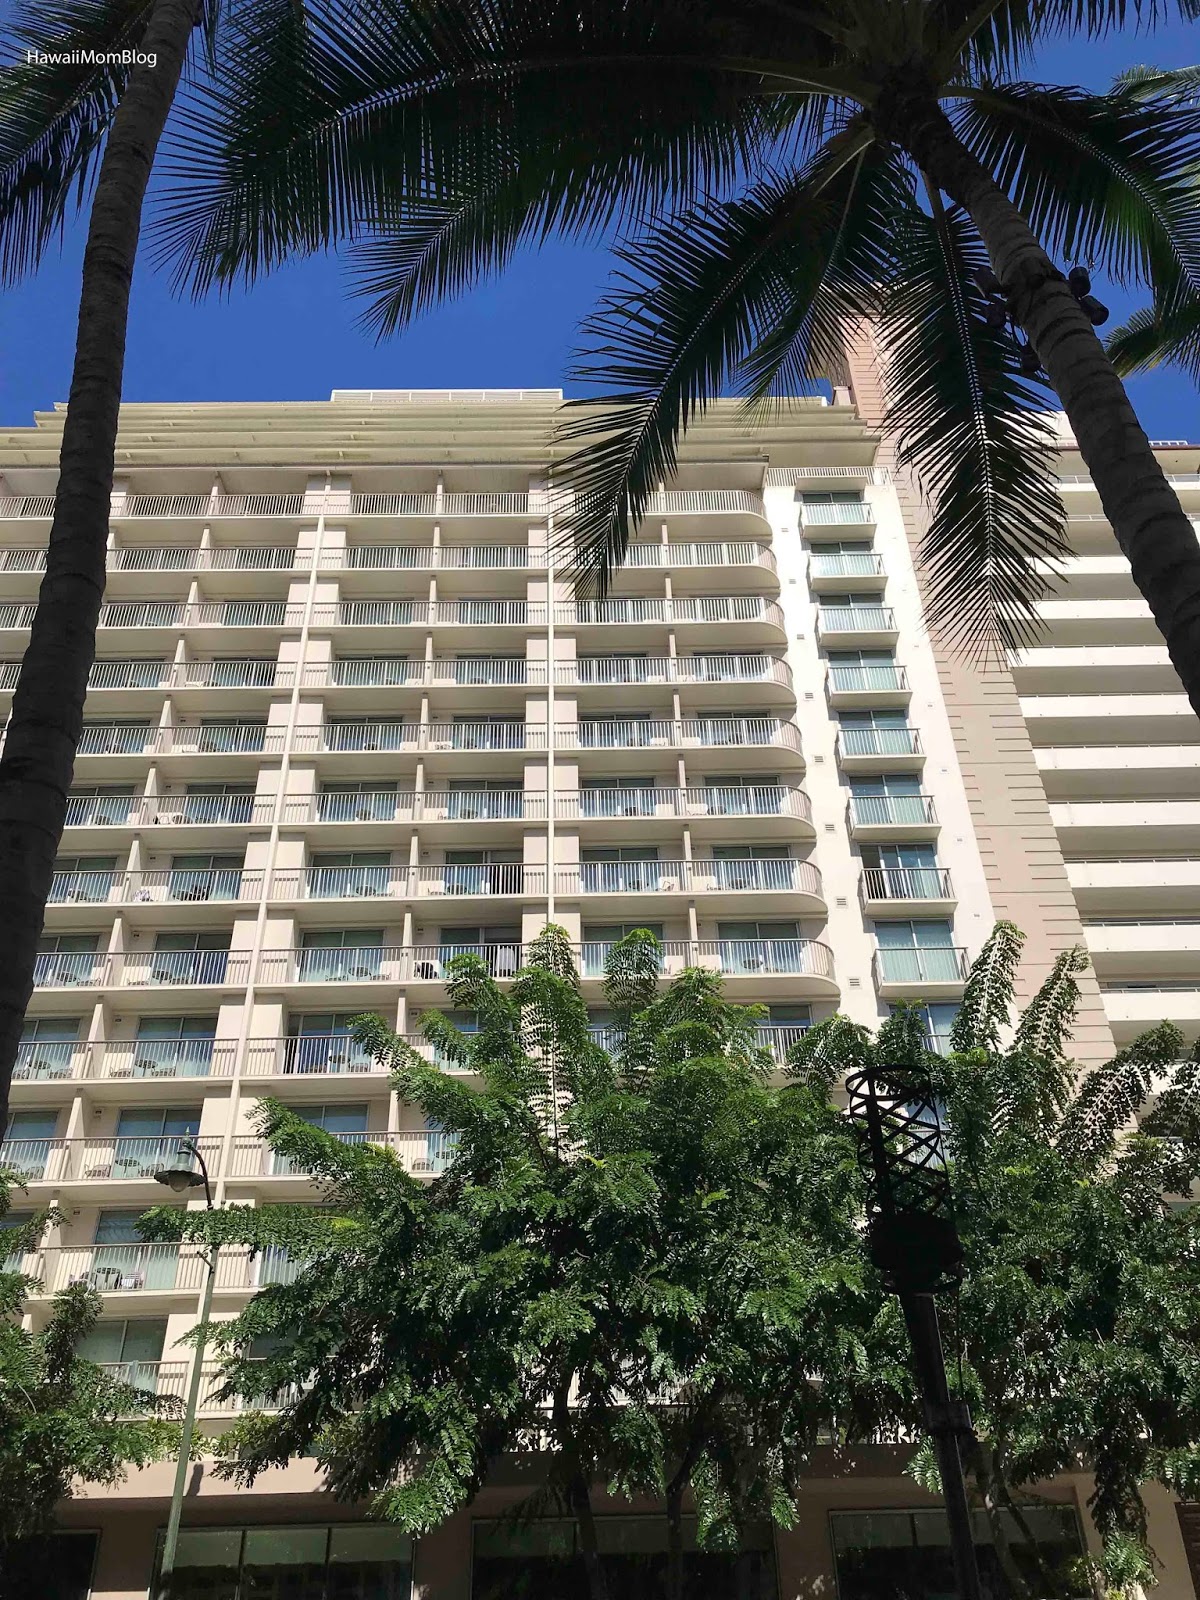 Hawaii Mom Blog Hilton Garden Inn Waikiki Beach Review